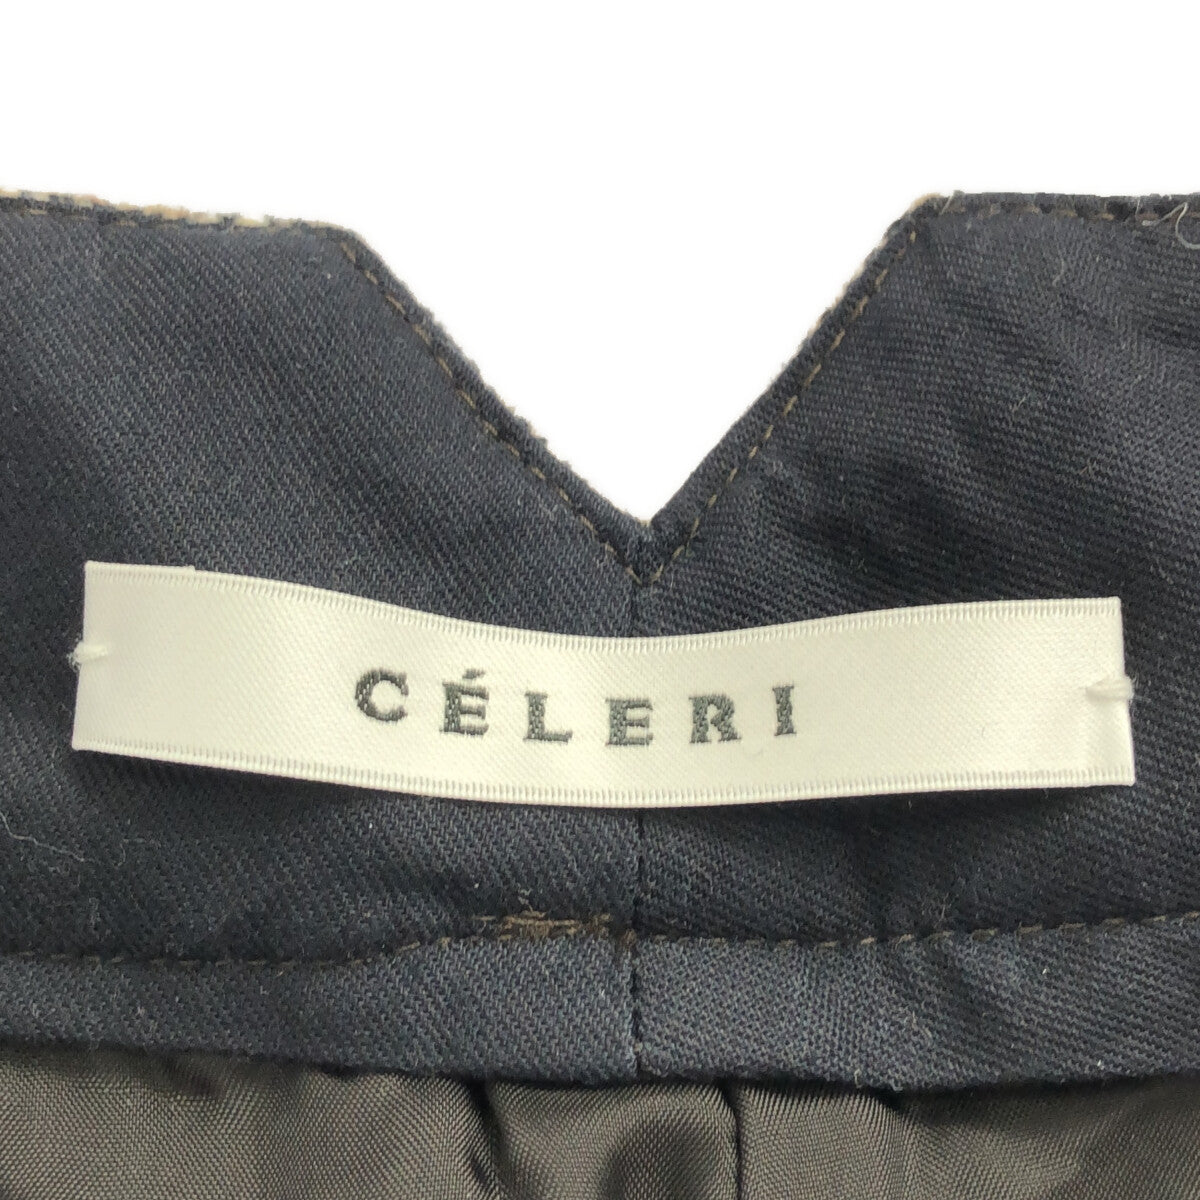 CELERI / セルリ | Deuxieme Classe取扱い ツイードフレアパンツ | 36 | ブラウン | レディース